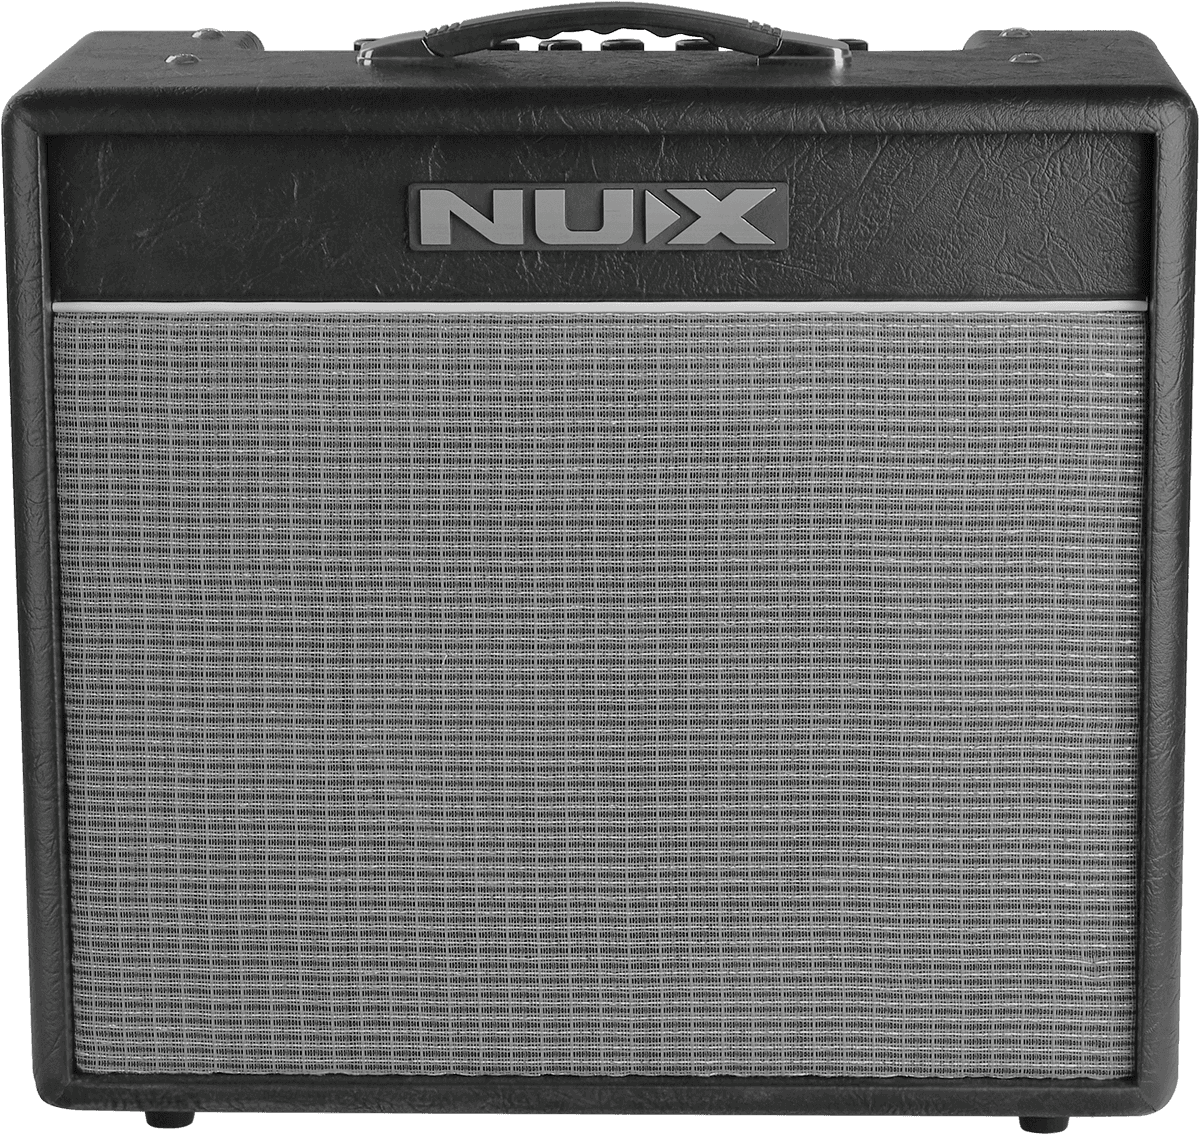 Nux Mighty 40 Bt 40w 1x10 - Combo amplificador para guitarra eléctrica - Variation 1